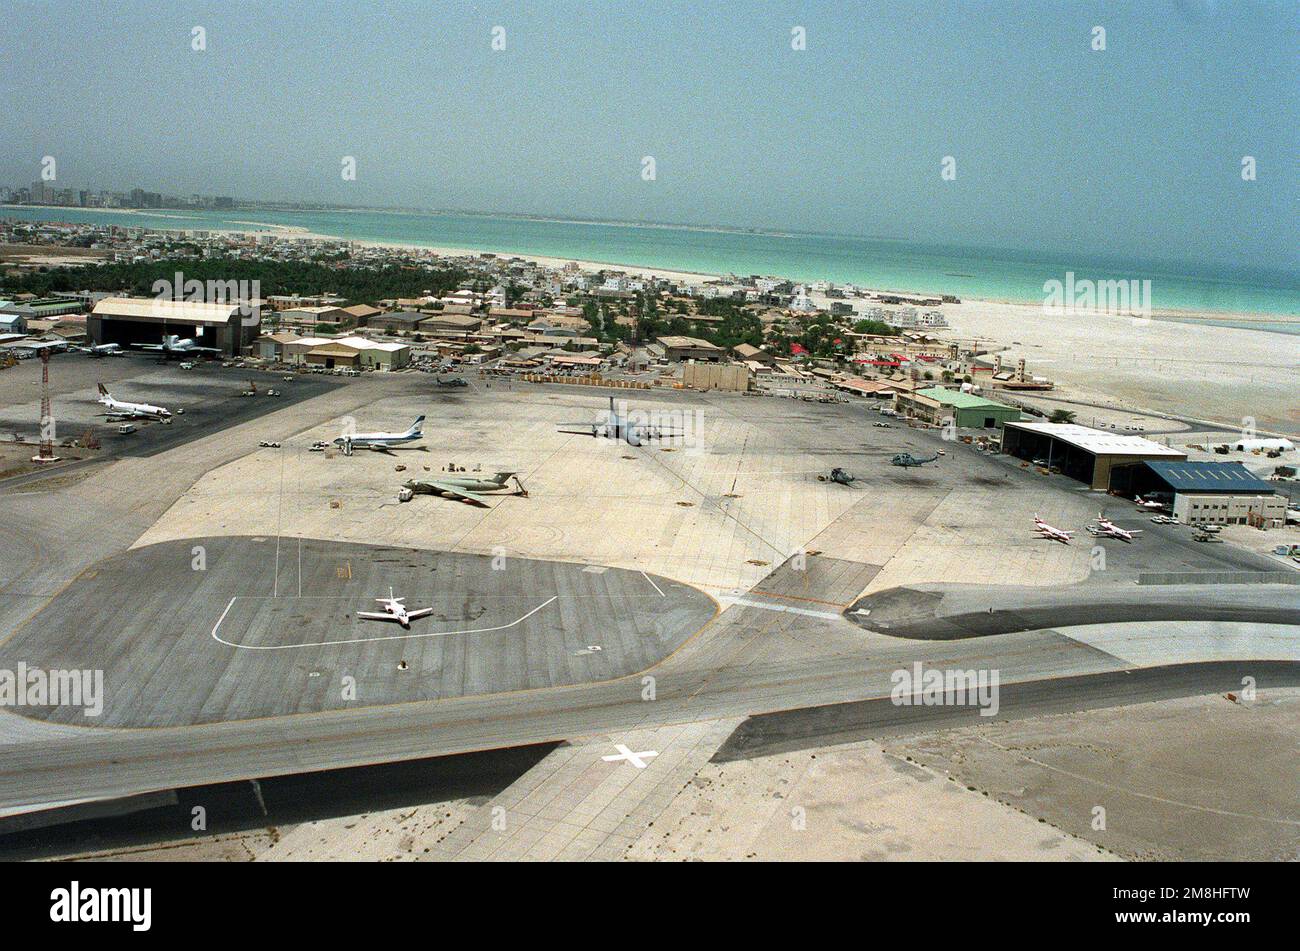 Un aperçu de l'aéroport de Bahreïn avec divers avions militaires et civils stationnés sur les rampes. Pays: Bahreïn (BHR) Banque D'Images